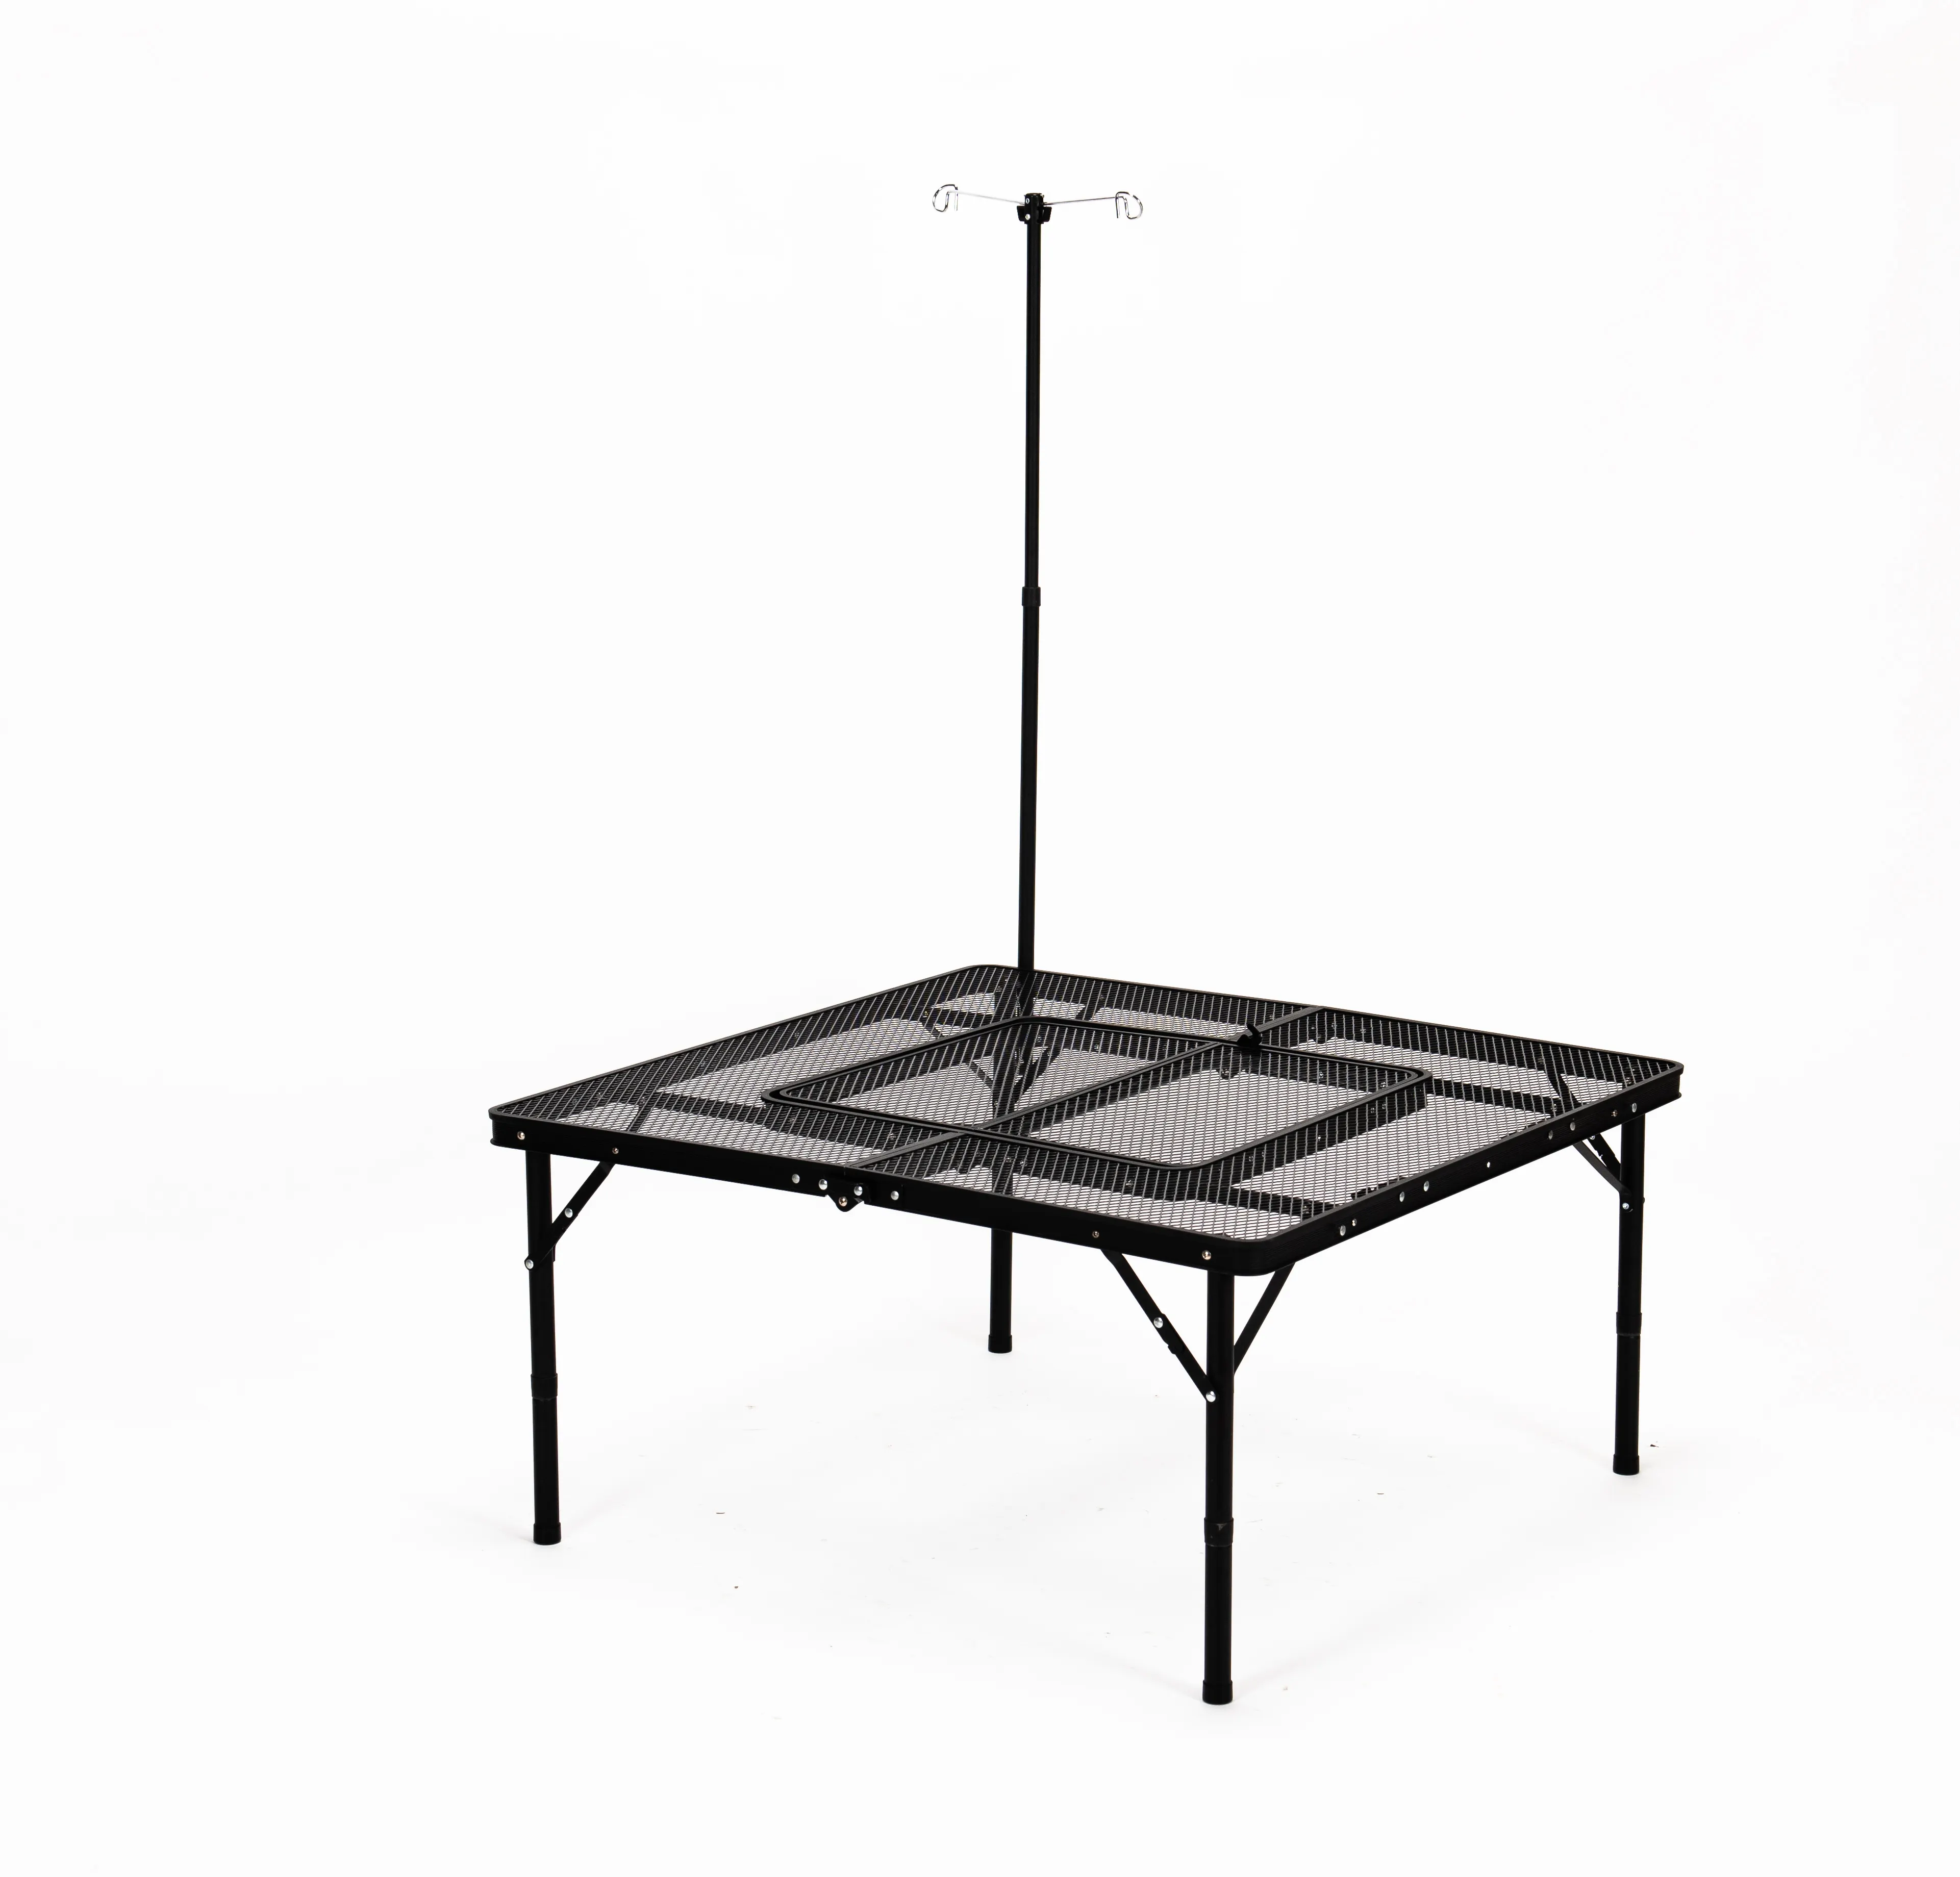 Dobrável mesa Grill portátil para fora leve alumínio Metal Grill Stand mesa para Camping cozinhar churrasco pernas ajustáveis